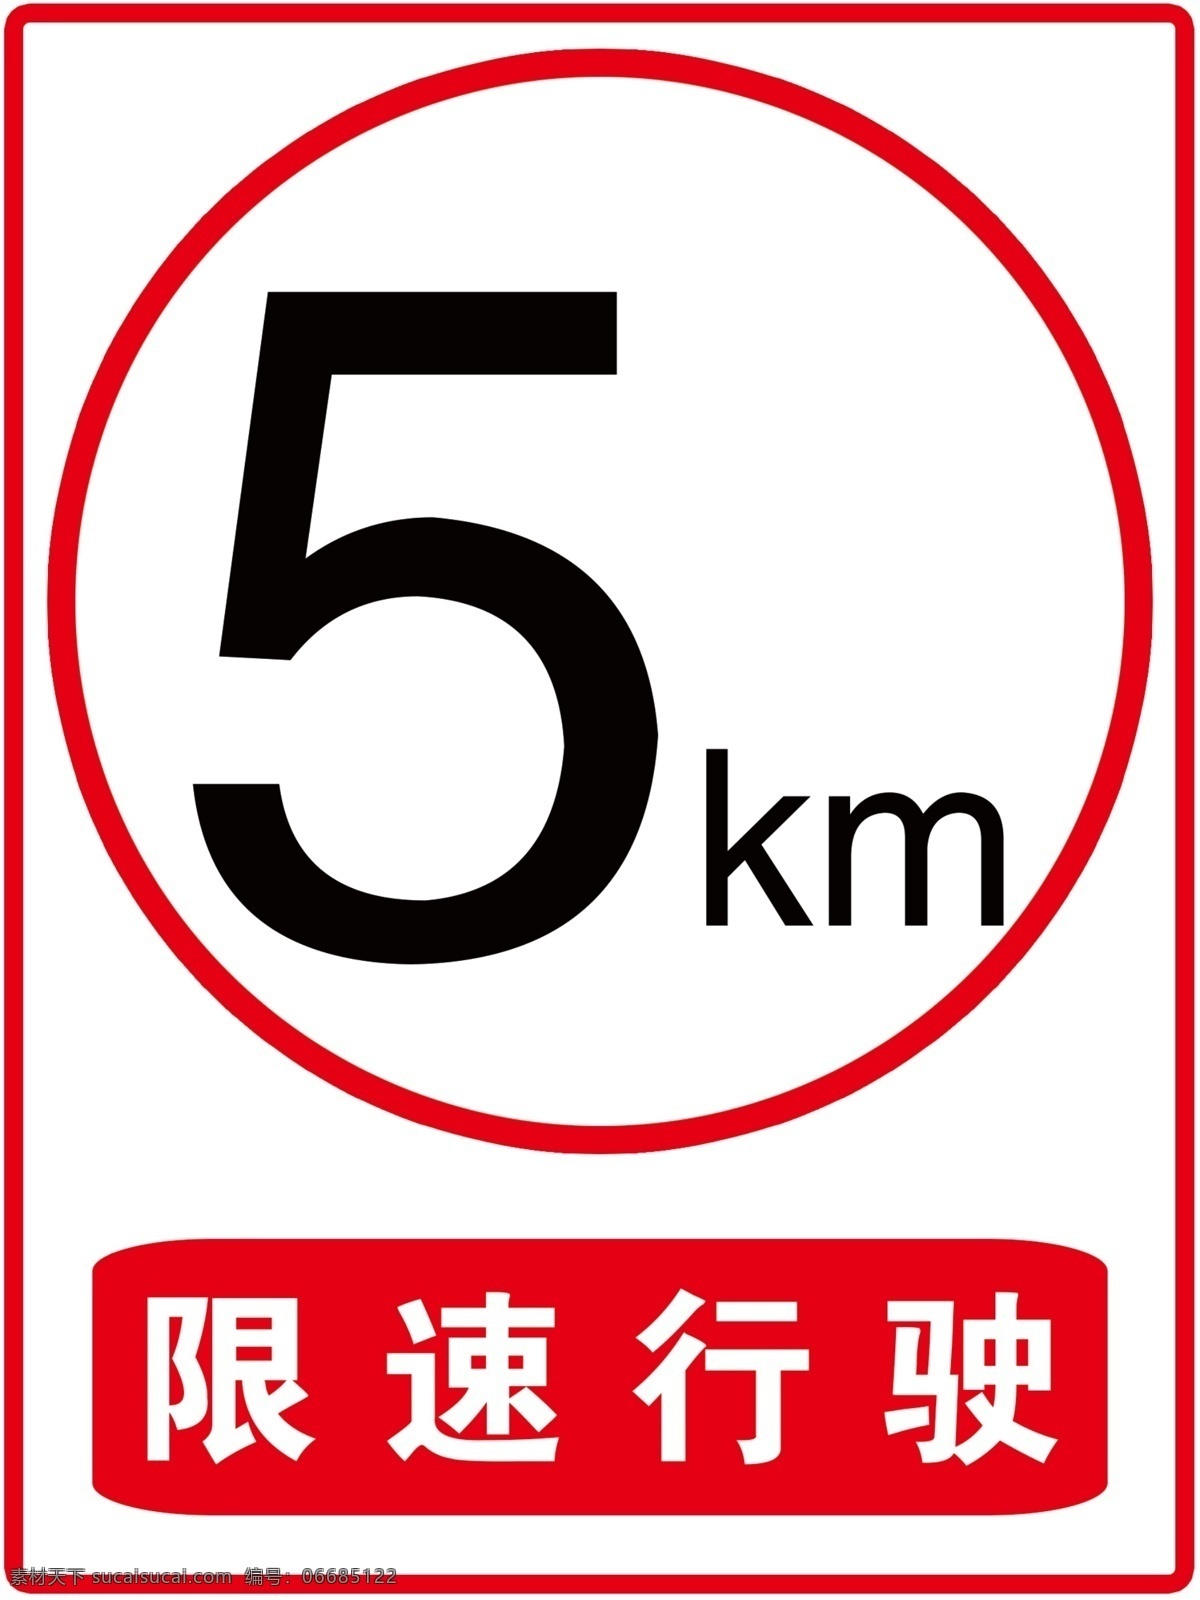 限速5公里 限速 5公里 限速行驶 限速5km 学校 安全 写真 红色 限速牌 展板模板